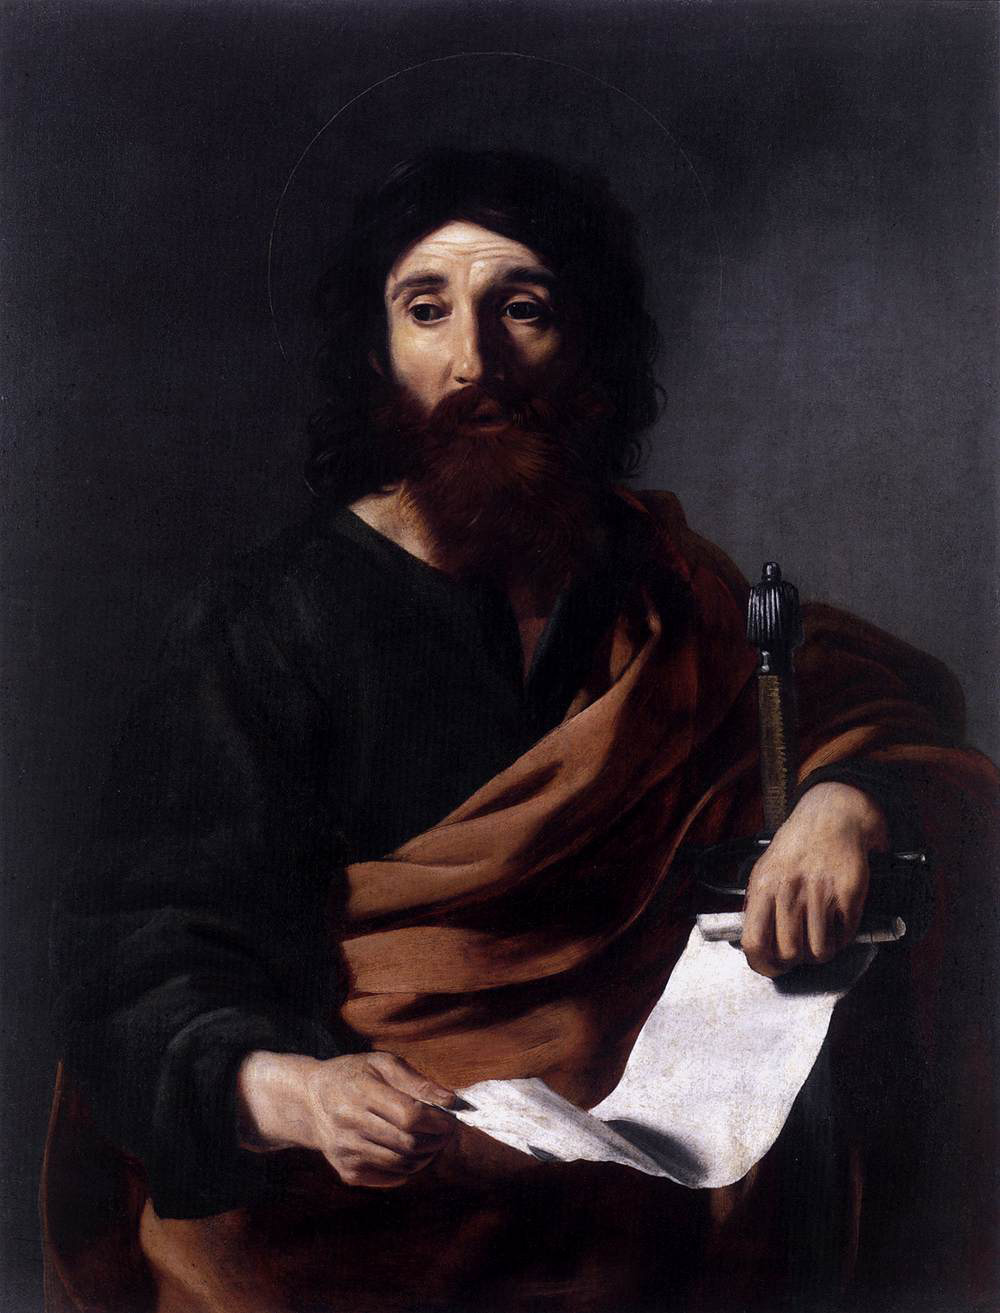  Nicolas Tournier, Saint Paul